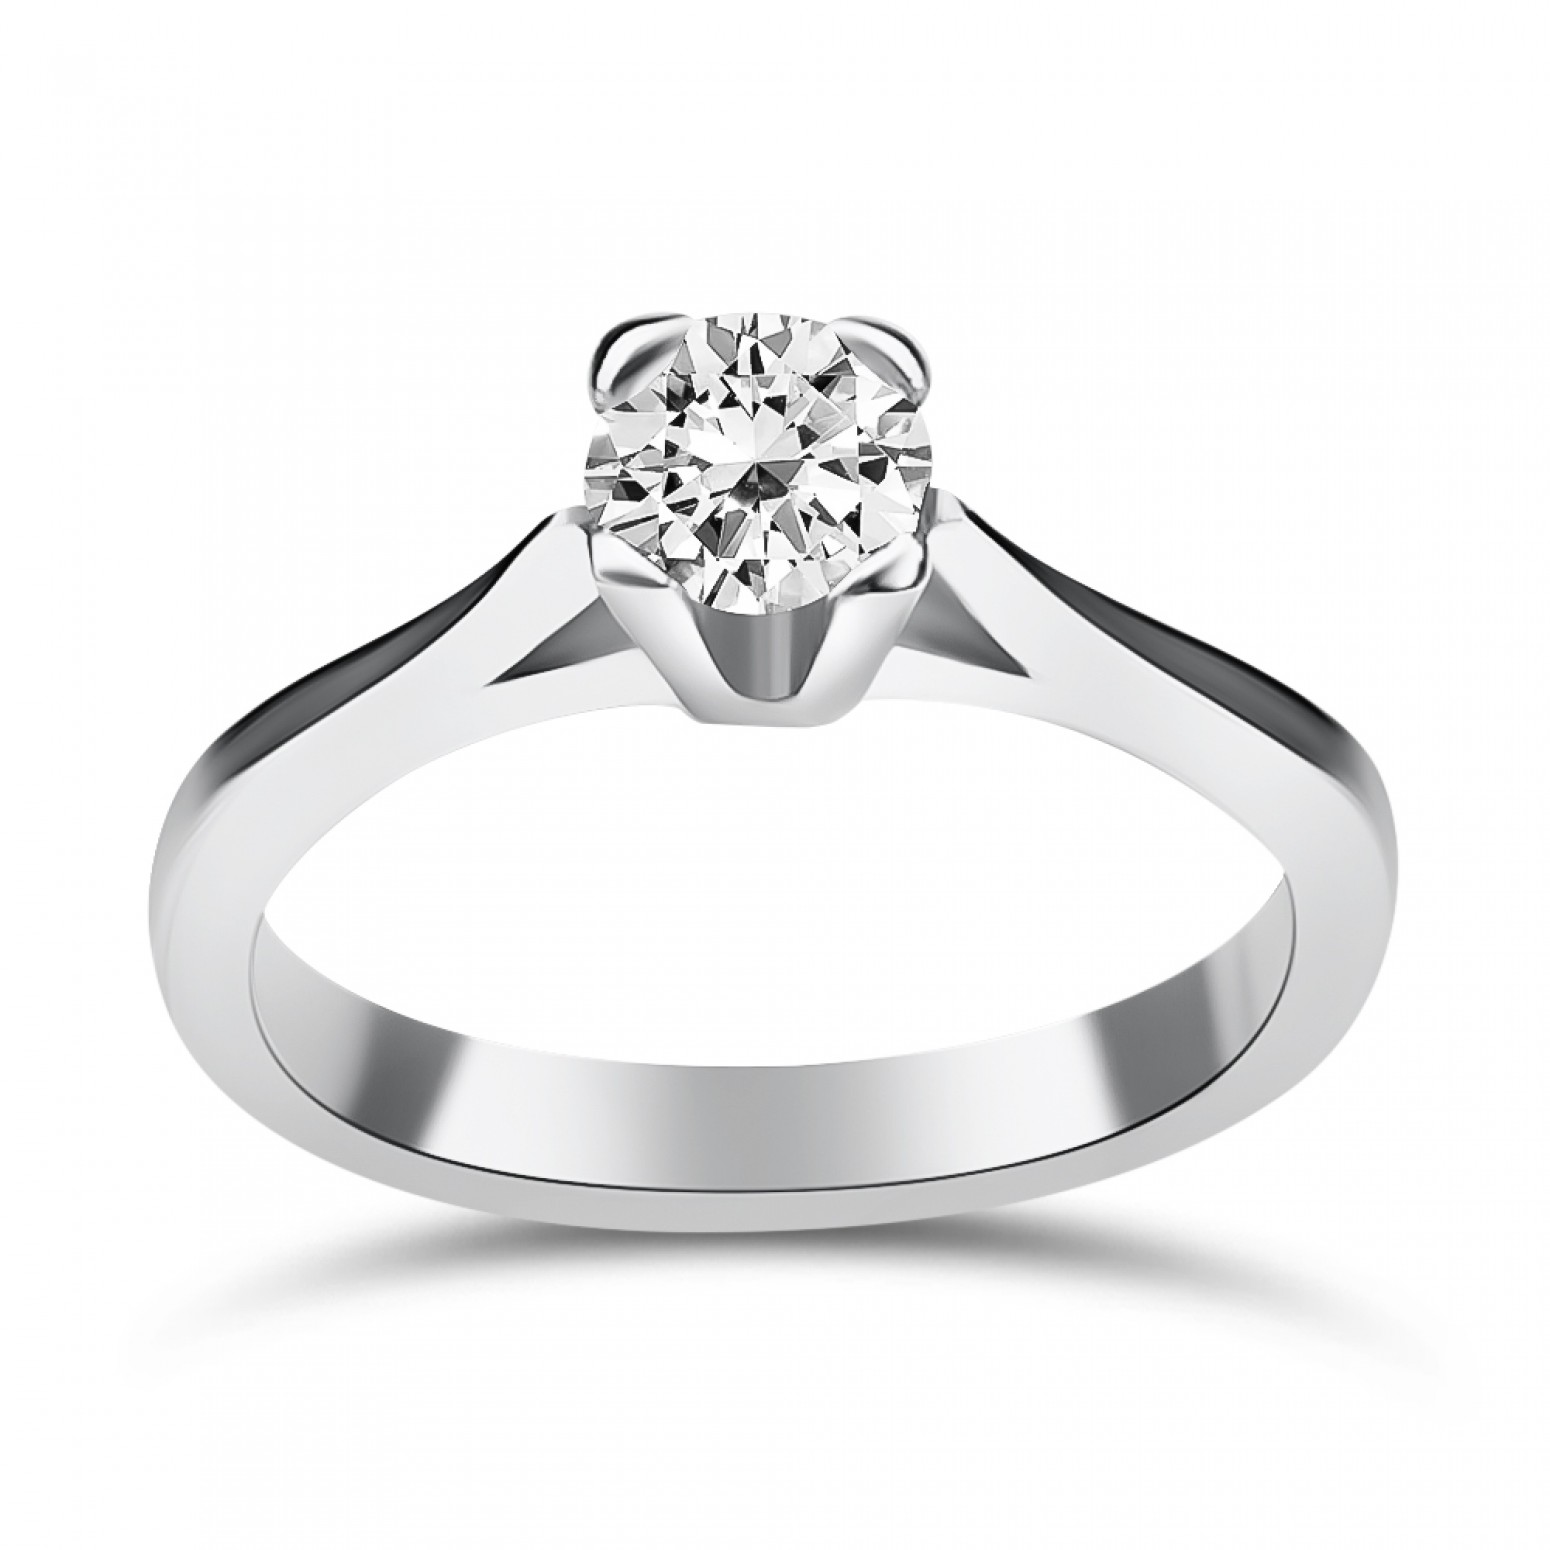 Μονόπετρο Δαχτυλίδι - Μονόπετρο δαχτυλίδι Κ18 λευκόχρυσο με διαμάντι 0.35ct, VS1, I από το GIA, da3905 ΔΑΧΤΥΛΙΔΙΑ ΑΡΡΑΒΩΝΑ Κοσμηματα - chrilia.gr